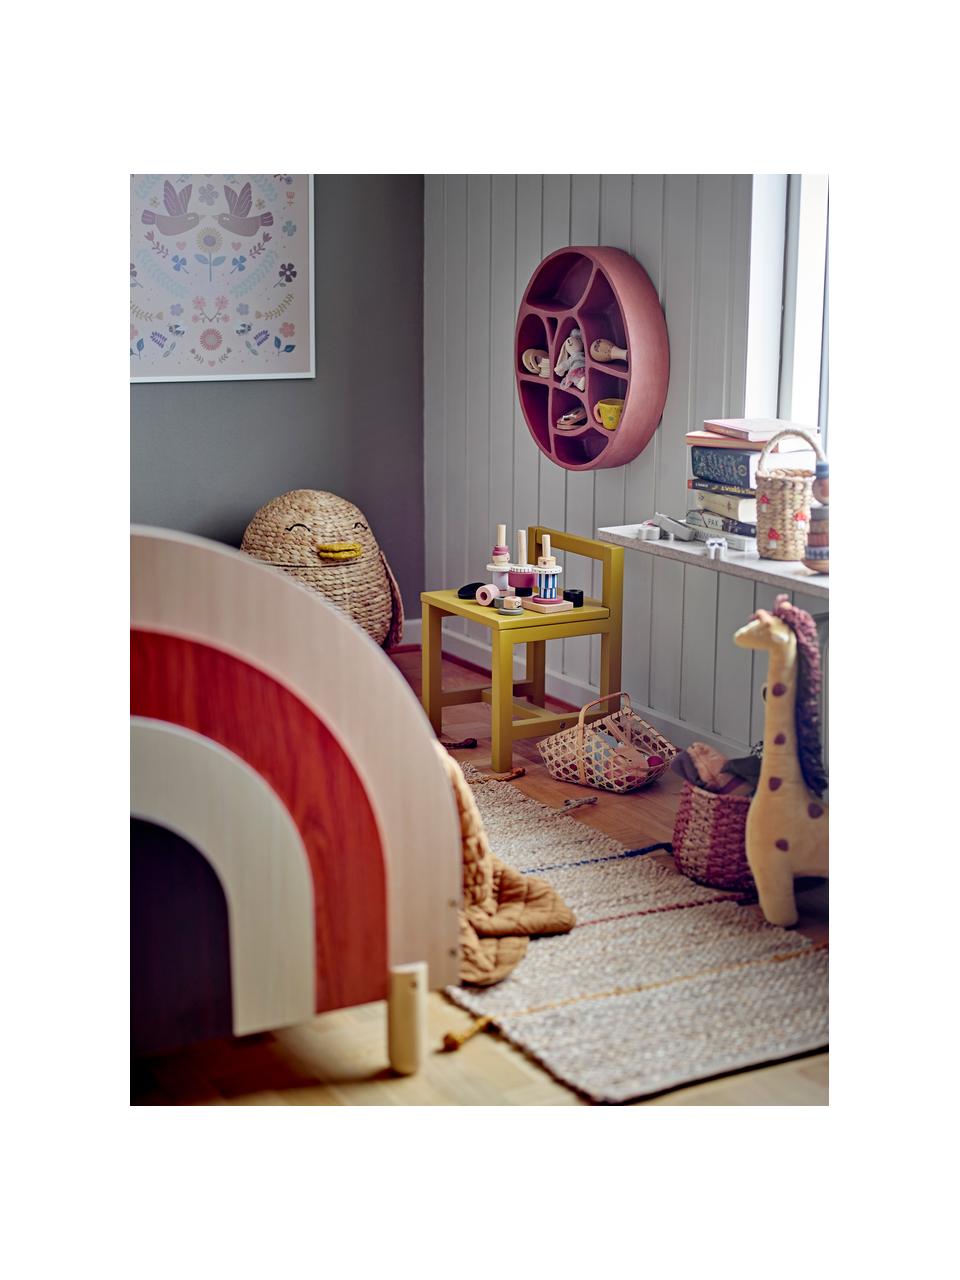 Hračka Wilma, Lotosové dřevo, bukové dřevo, dřevovláknitá deska střední hustoty (MDF), Hnědá, více barev, Š 23 cm, V 15 cm